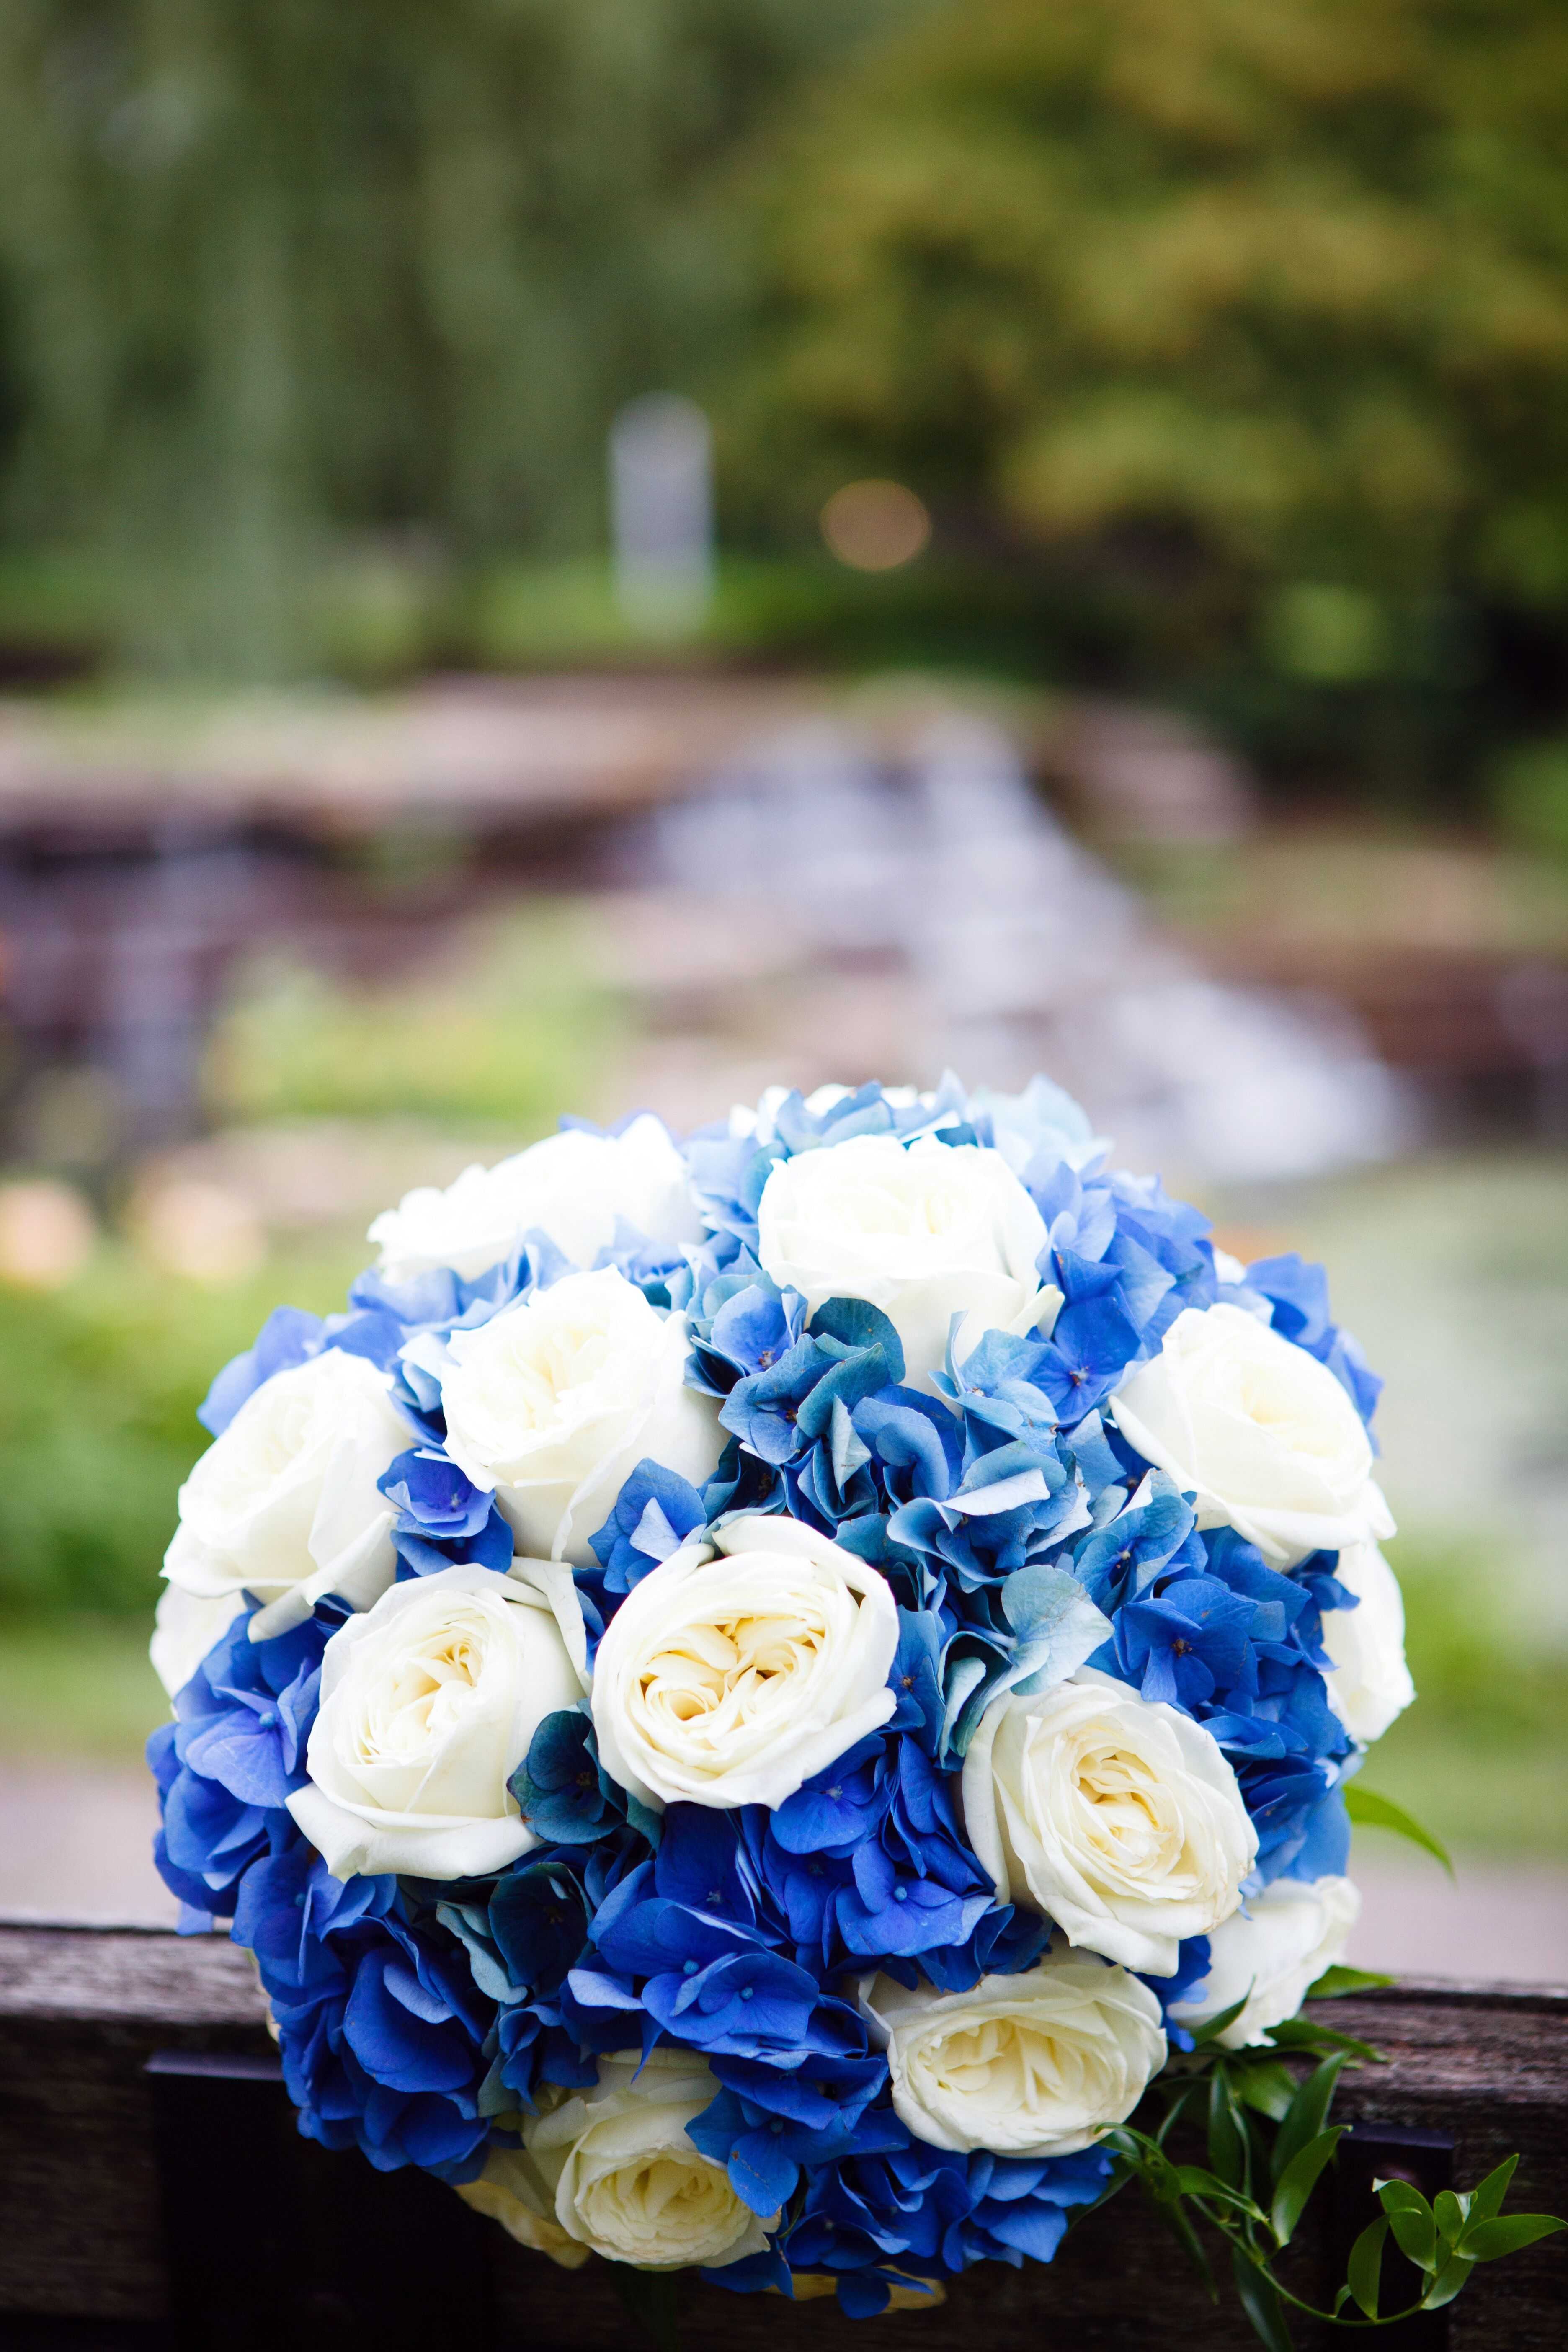 Сиреневый букет для невесты (70 фото): свадебные букеты в сиреневом цвете с белыми и нежно-персиковыми тонами